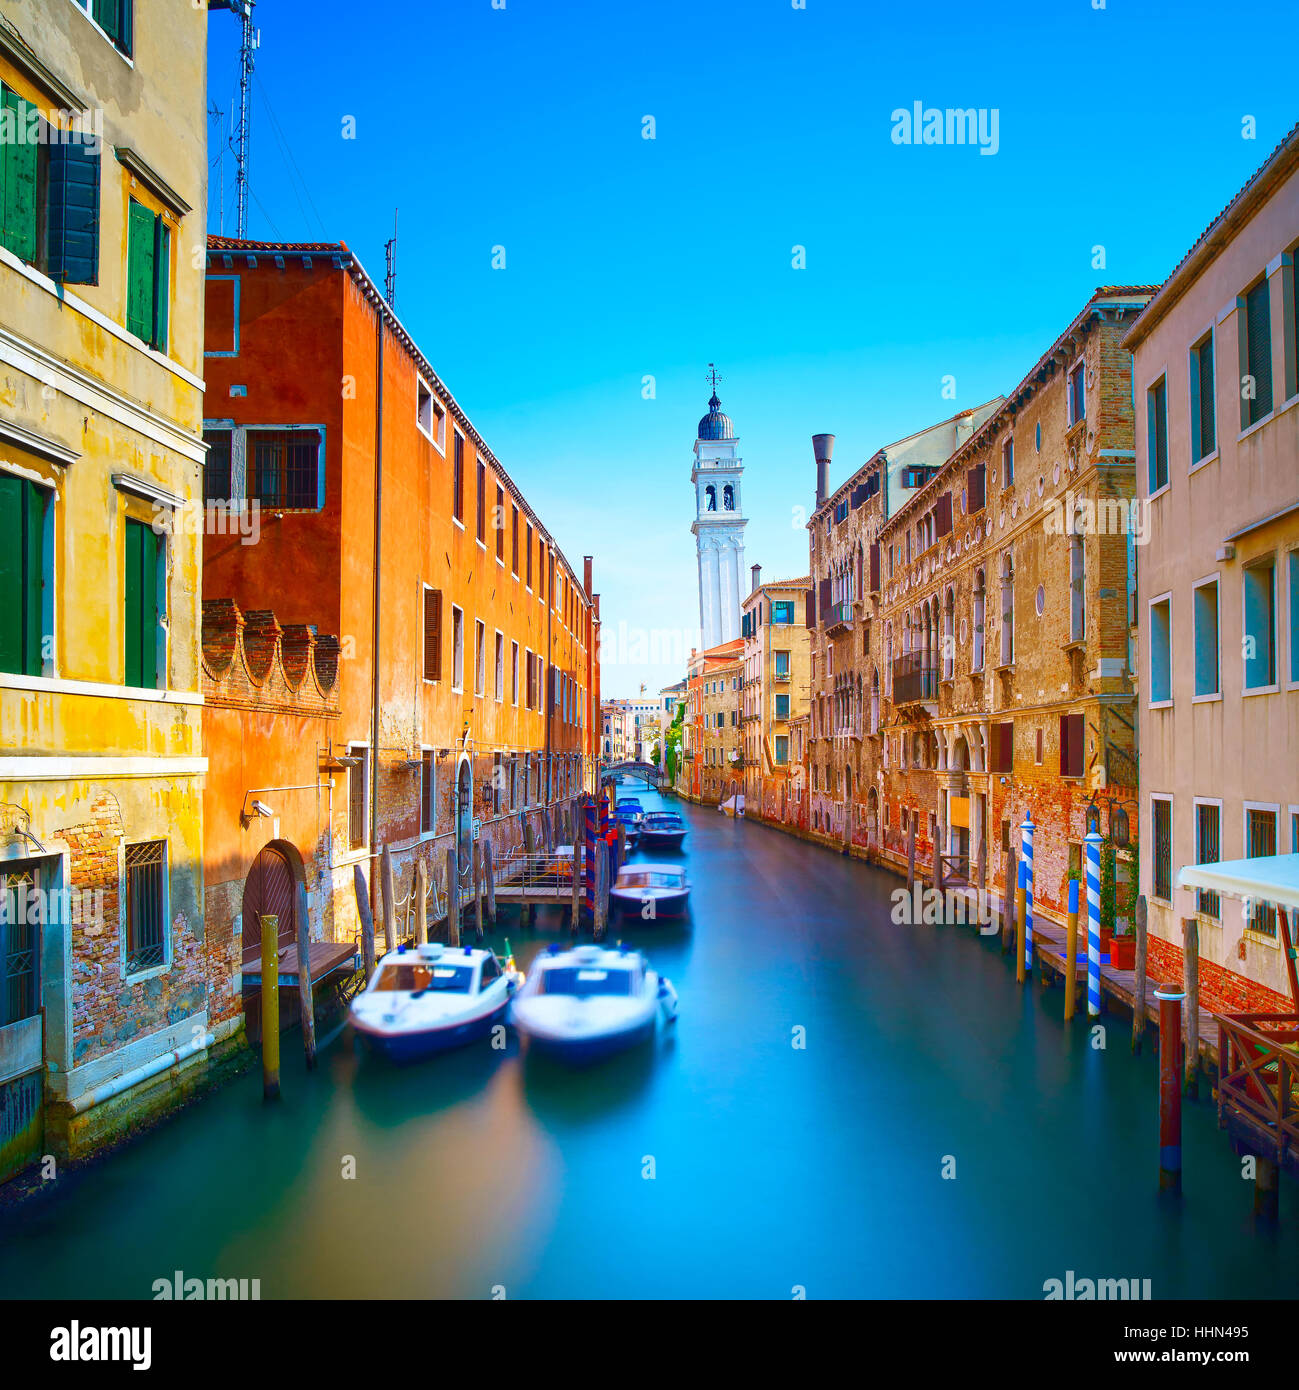 Venedig Sonnenuntergang Stadtbild, San Giorgio dei Greci Wasserkanal und Kirche Campanile. Italien, Europa. Stockfoto